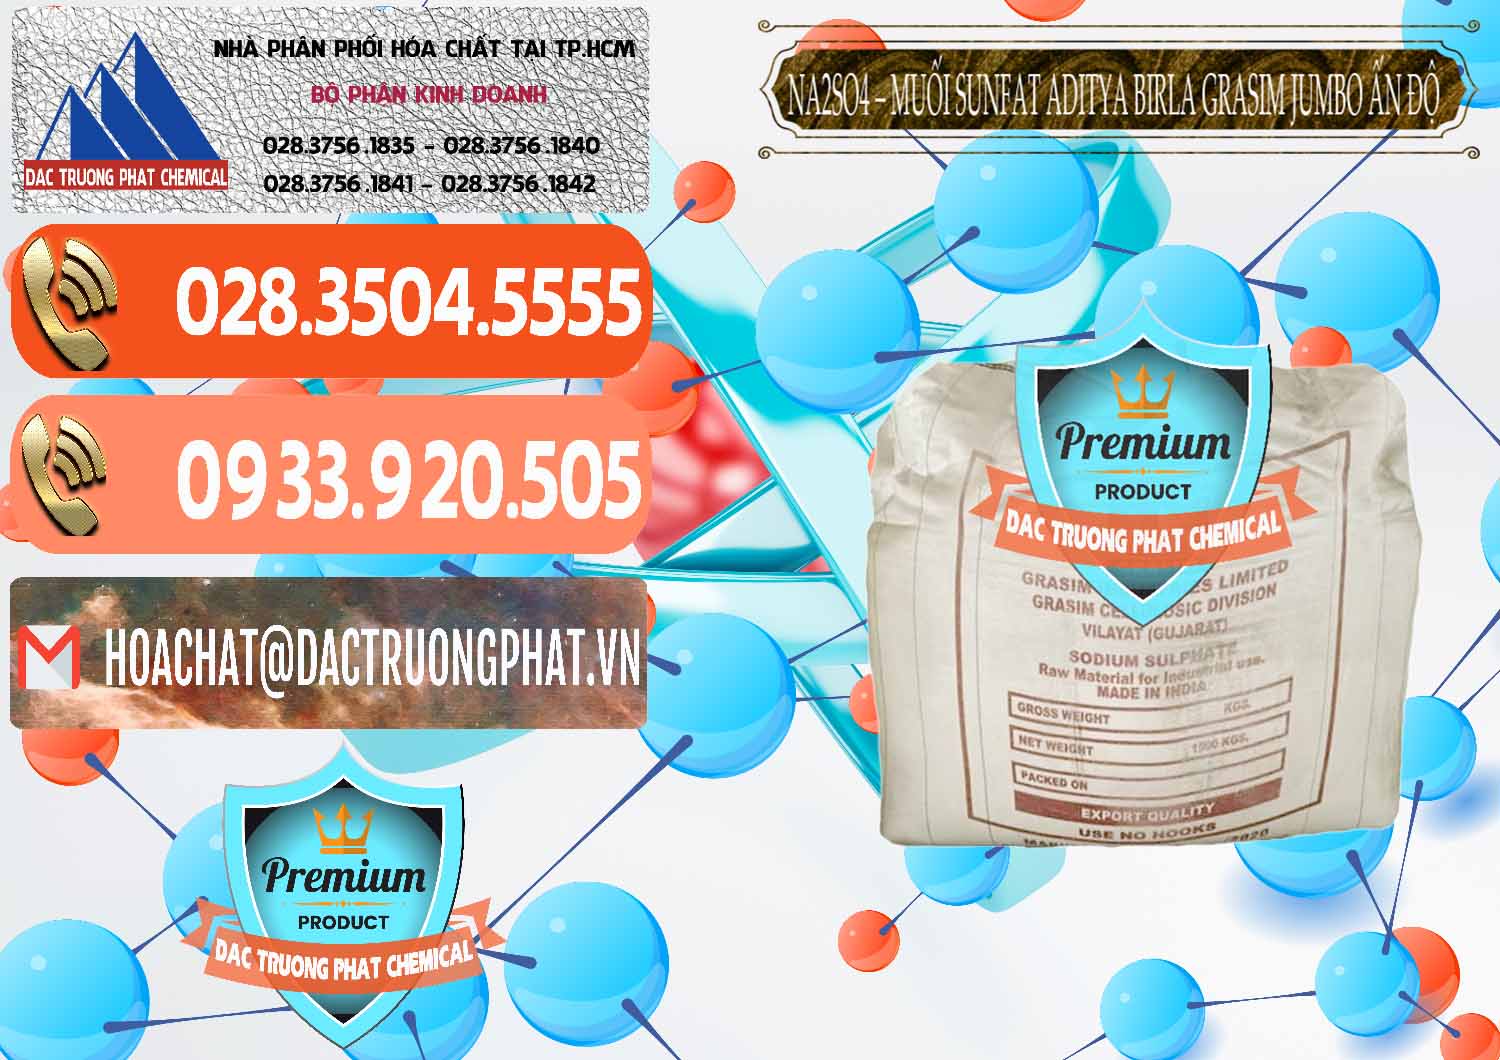 Bán và phân phối Sodium Sulphate - Muối Sunfat Na2SO4 Jumbo Bành Aditya Birla Grasim Ấn Độ India - 0357 - Cty chuyên bán - phân phối hóa chất tại TP.HCM - hoachatmientay.com